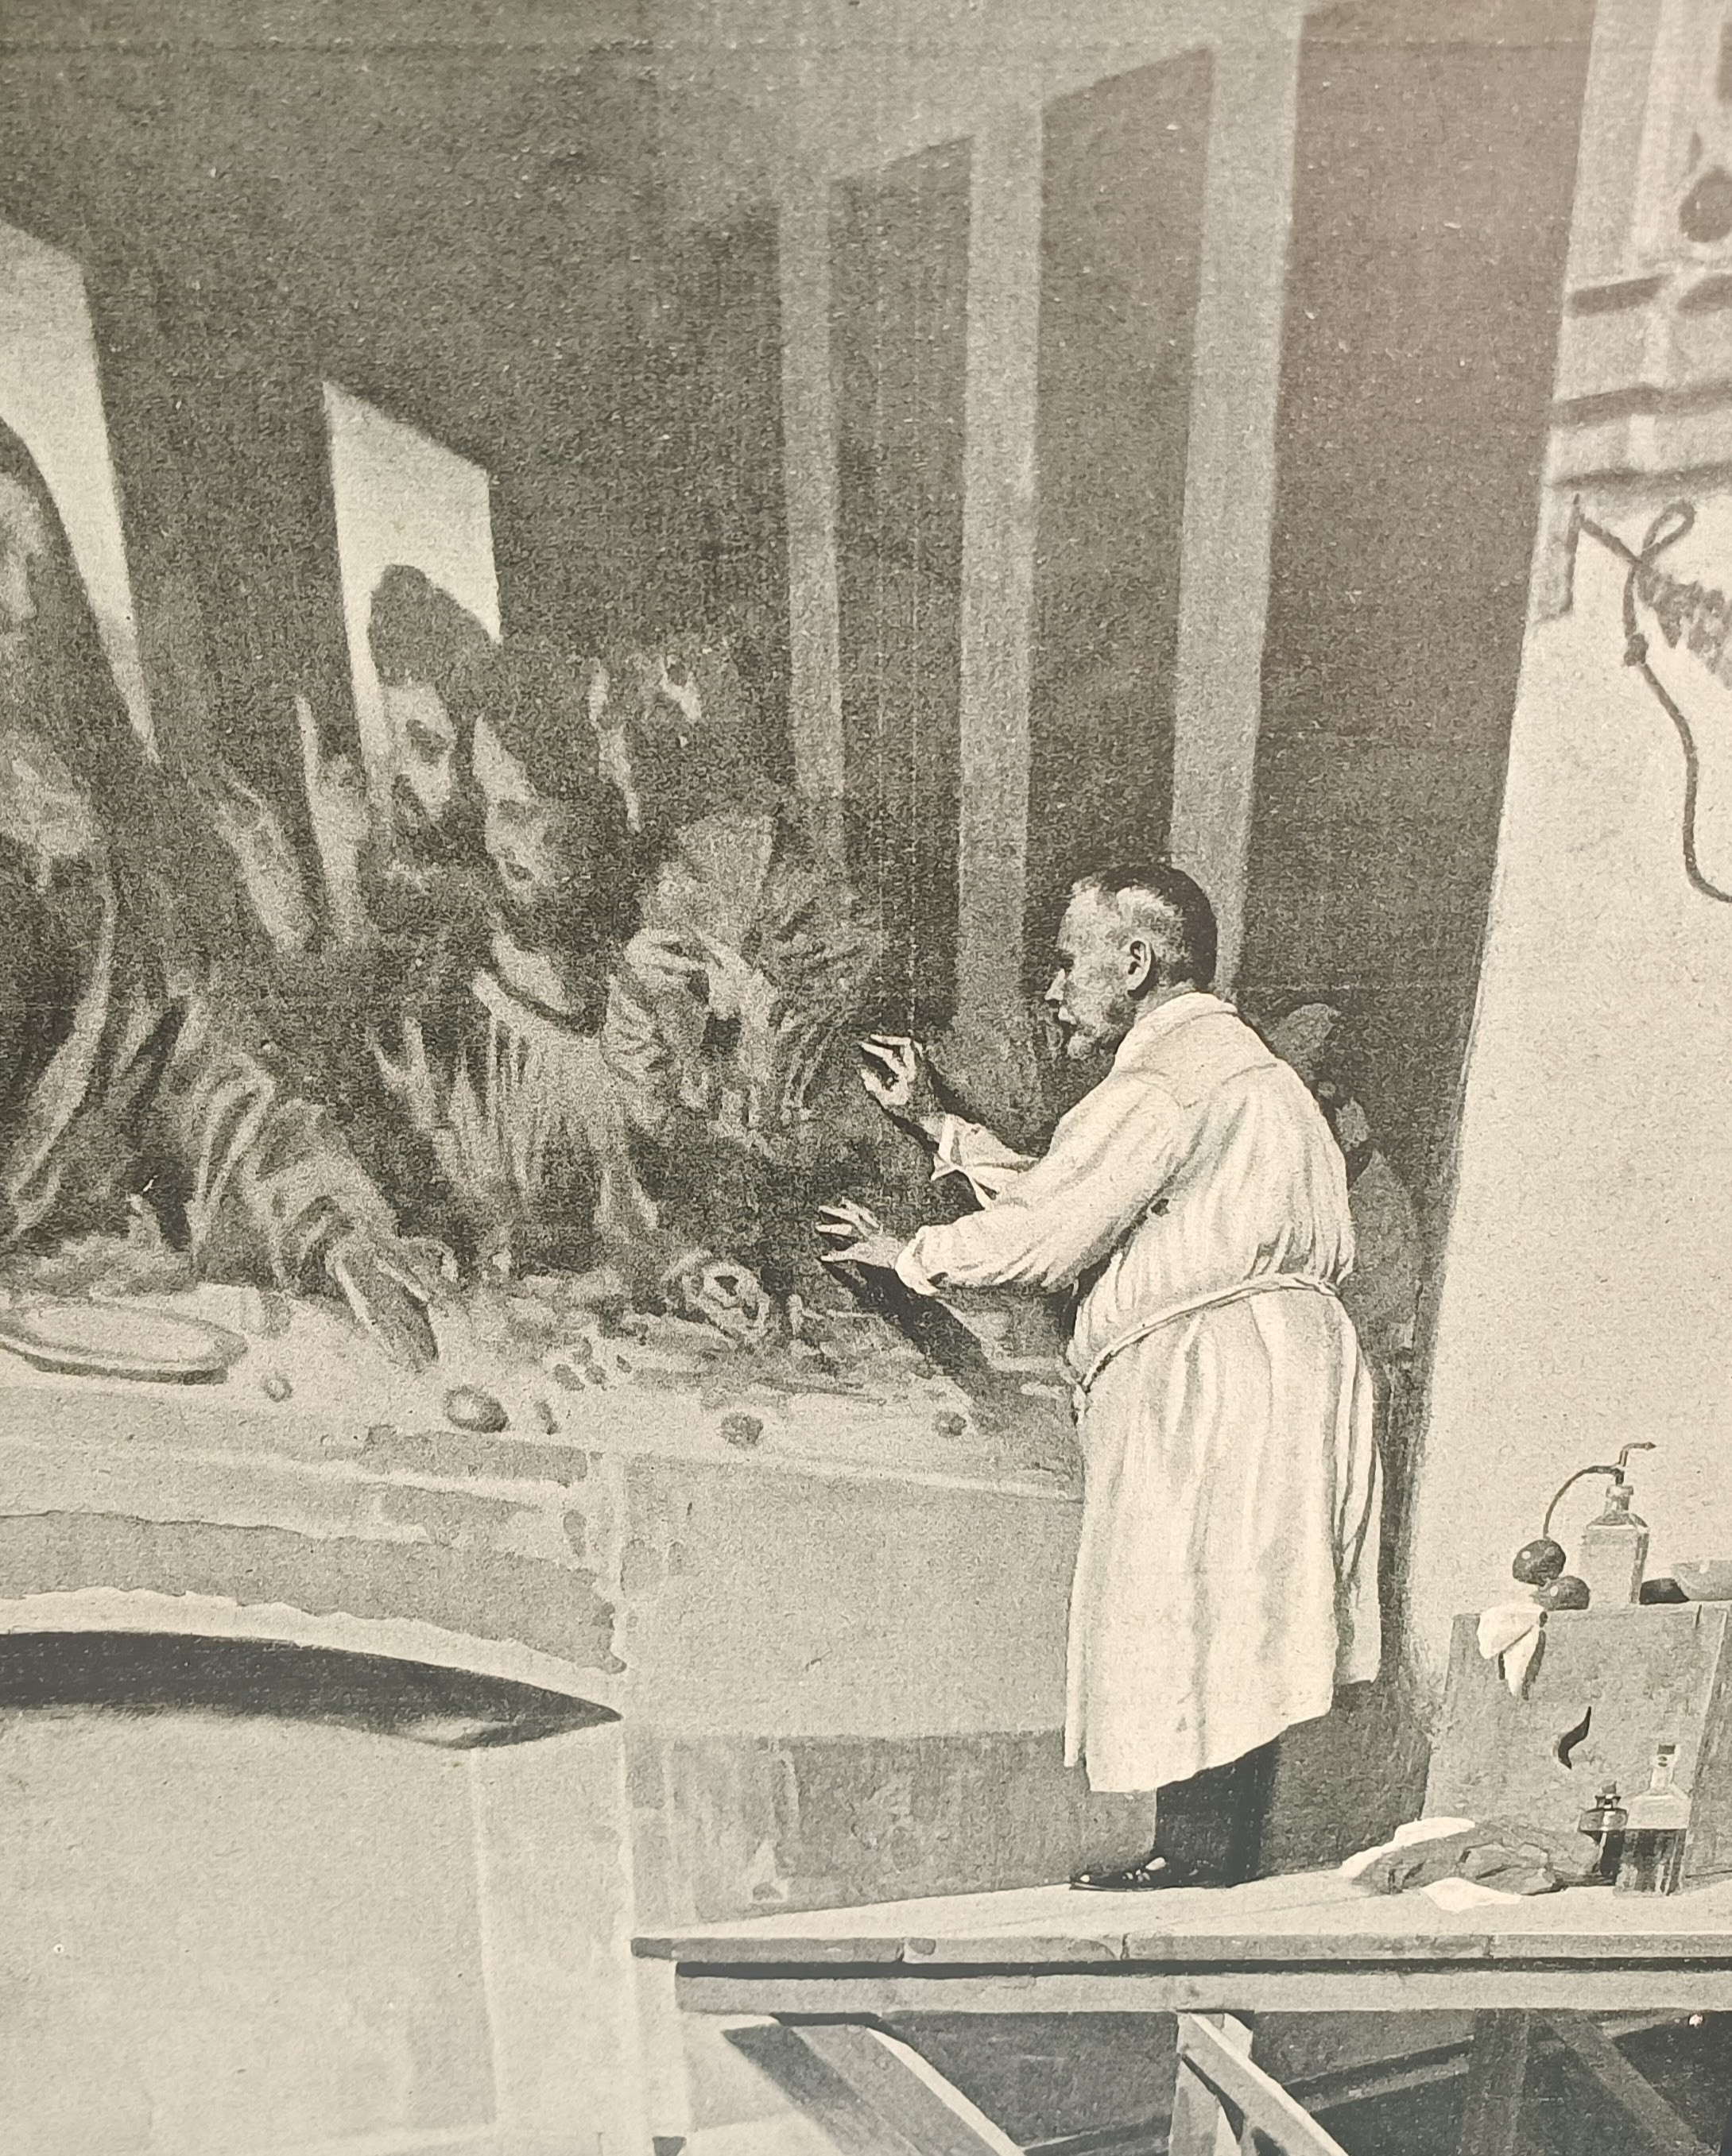 O Luigi Cavenaghi επί το έργον (1908). Από ζωγραφιά του Riccardo Salvadori από φωτογραφία του L'Illustrazione Italiana, Year XXXV, No 41, October 11, 1908.